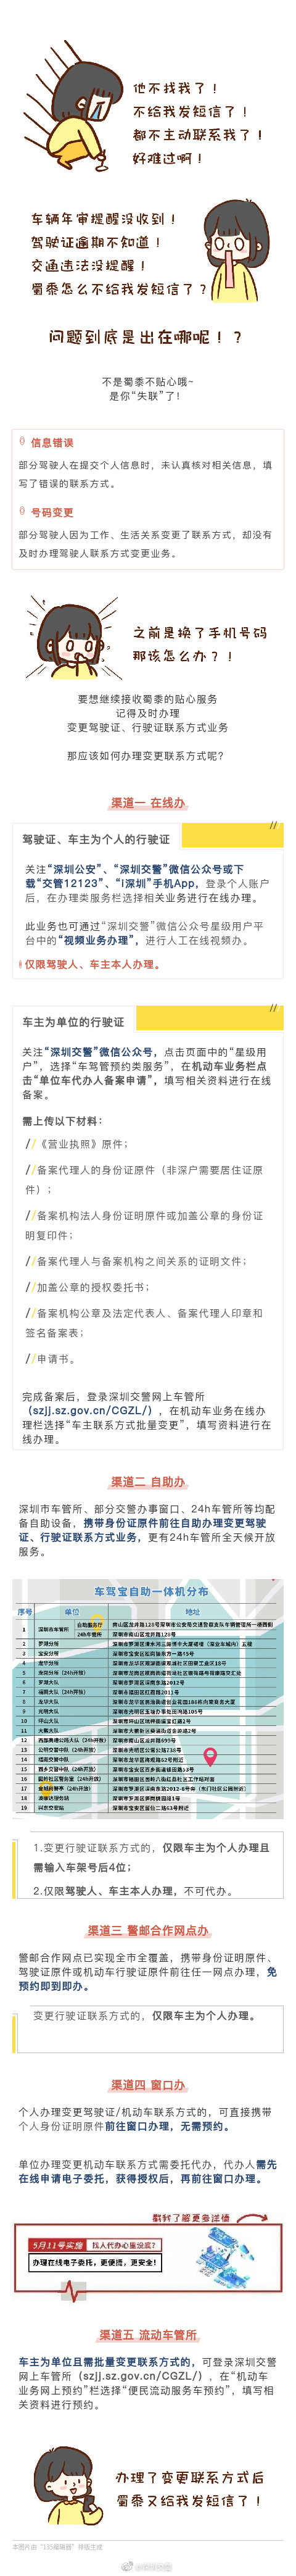 深圳变更驾驶证、行驶证联系方式后注意事项